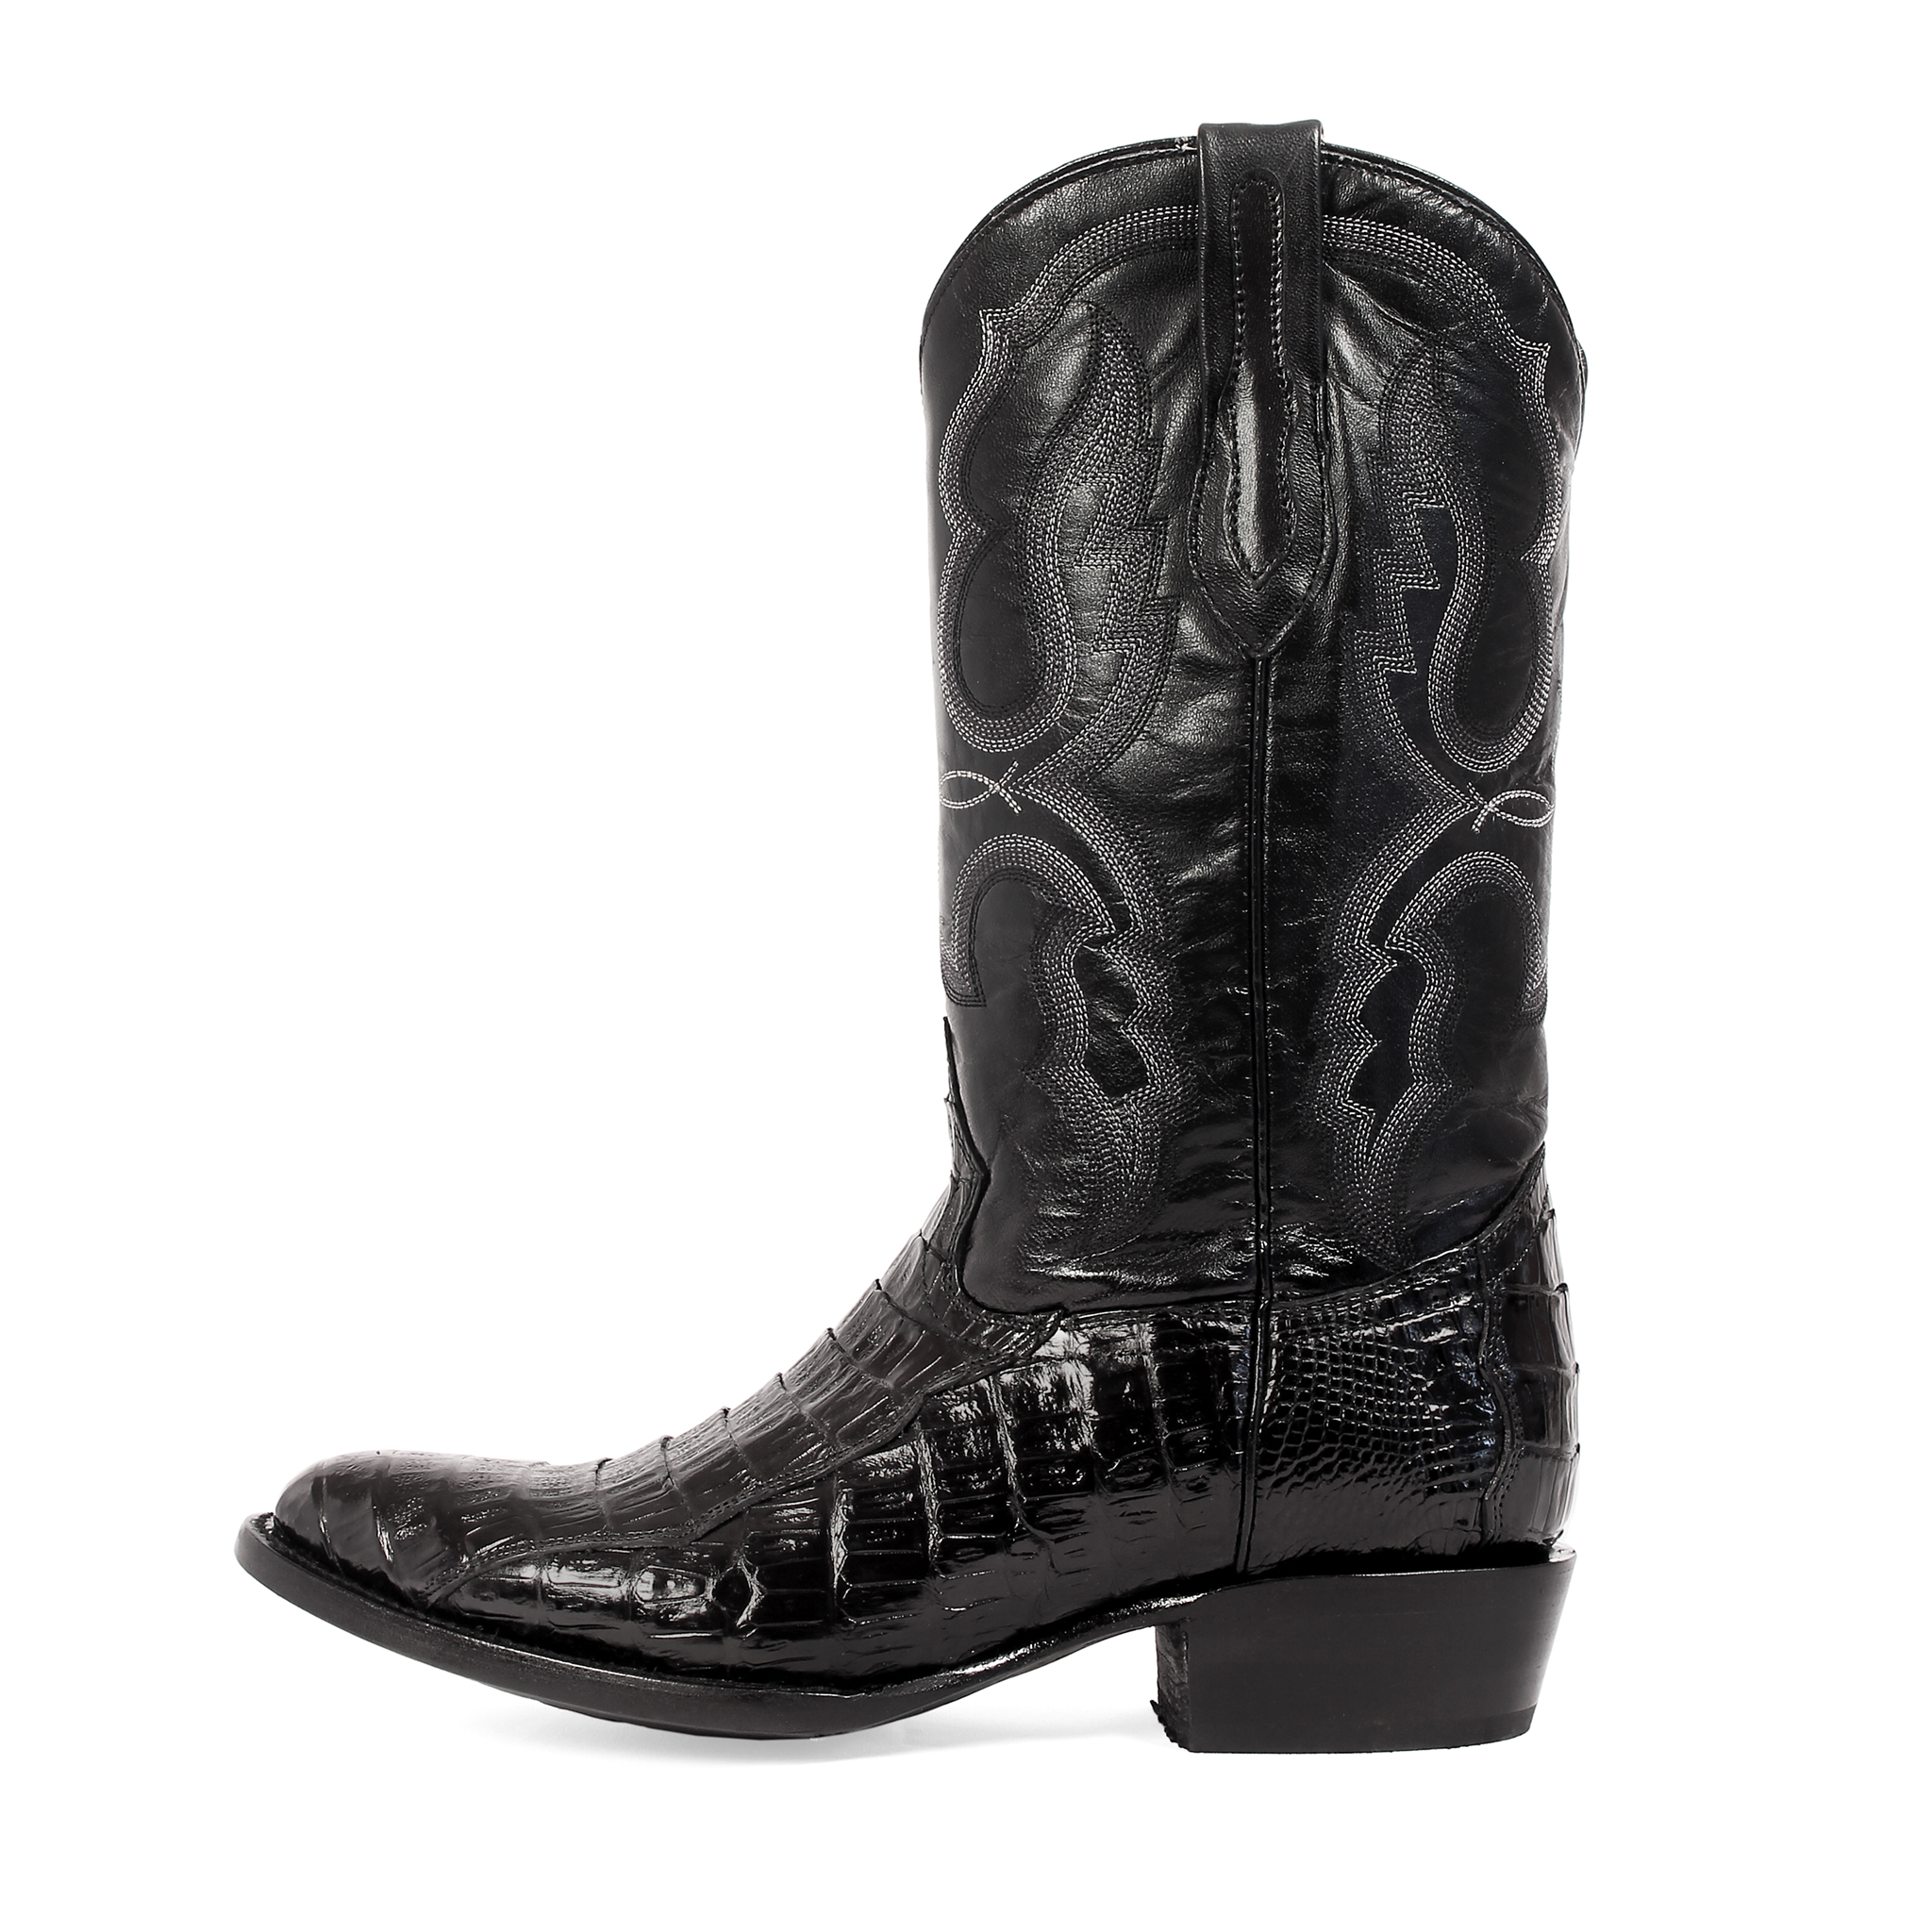 Men's Western Boot –The Malone by J.B. Dillon Western Wear